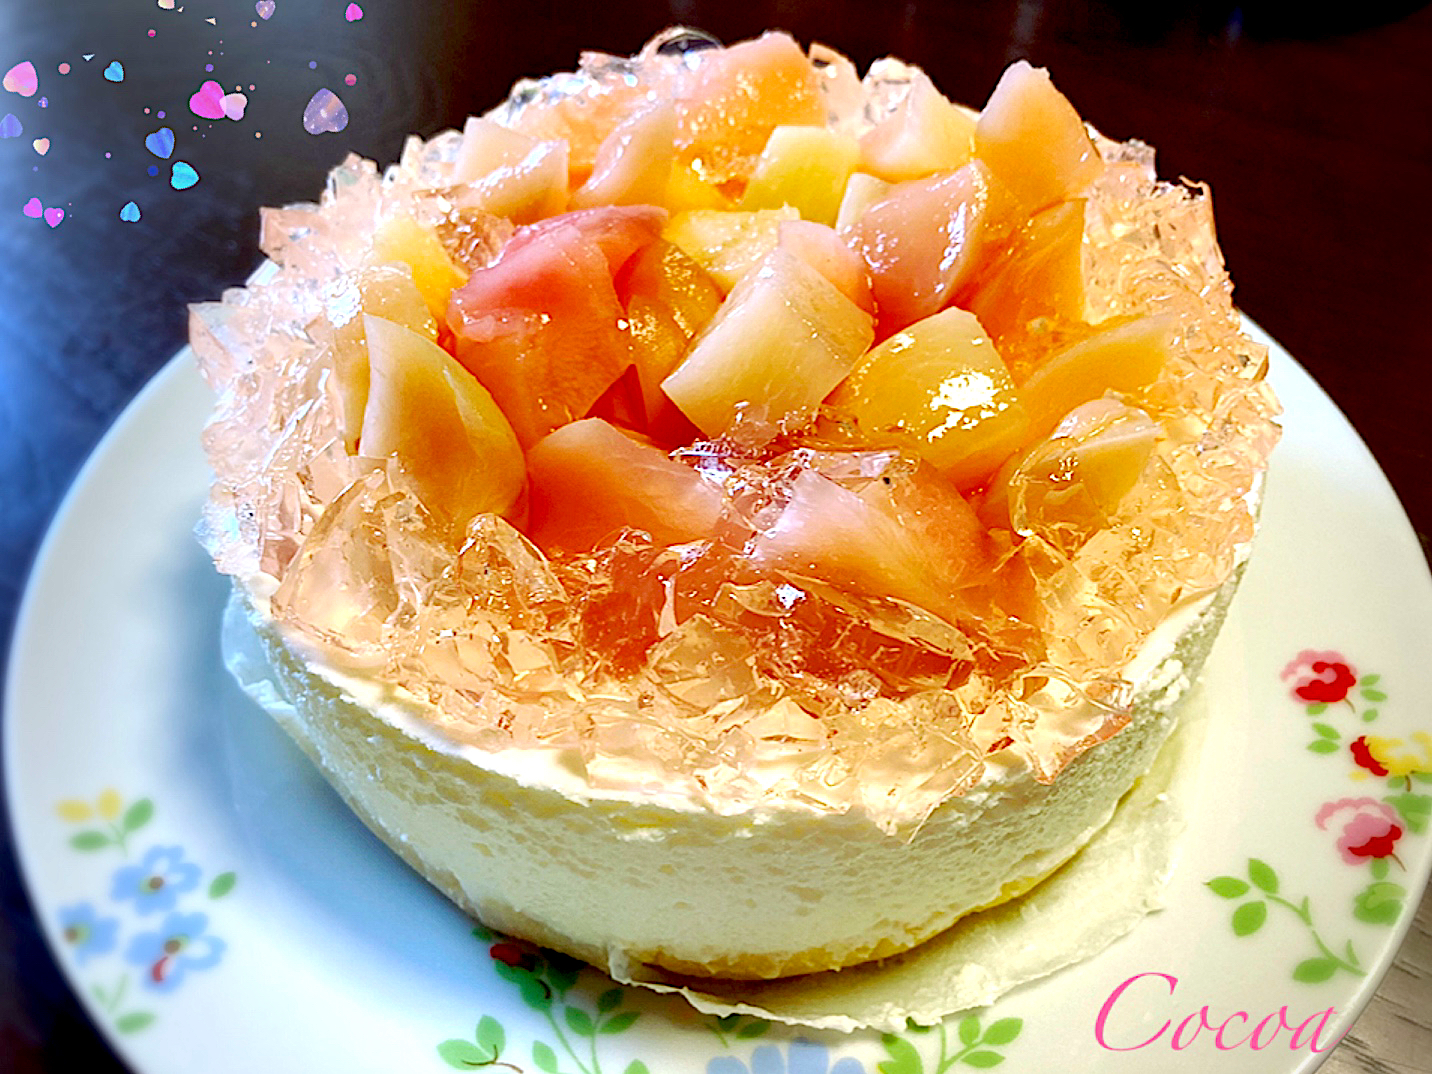 志野さんの料理 カルピスムースのケーキ